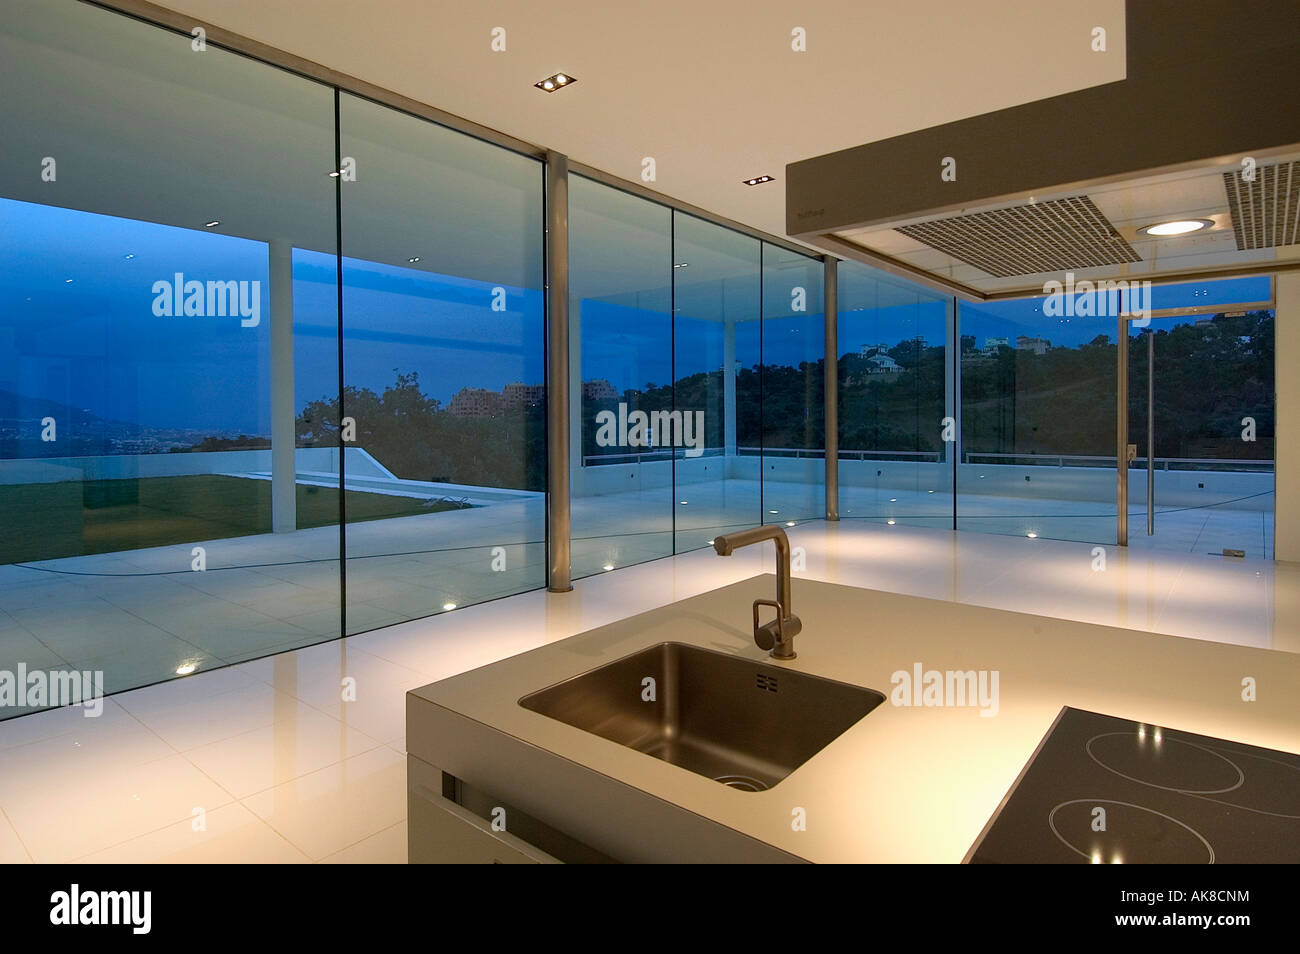 Lavandino in unità di isola in spagnolo moderno cucina con pareti in vetro e vista della terrazza di notte Foto Stock